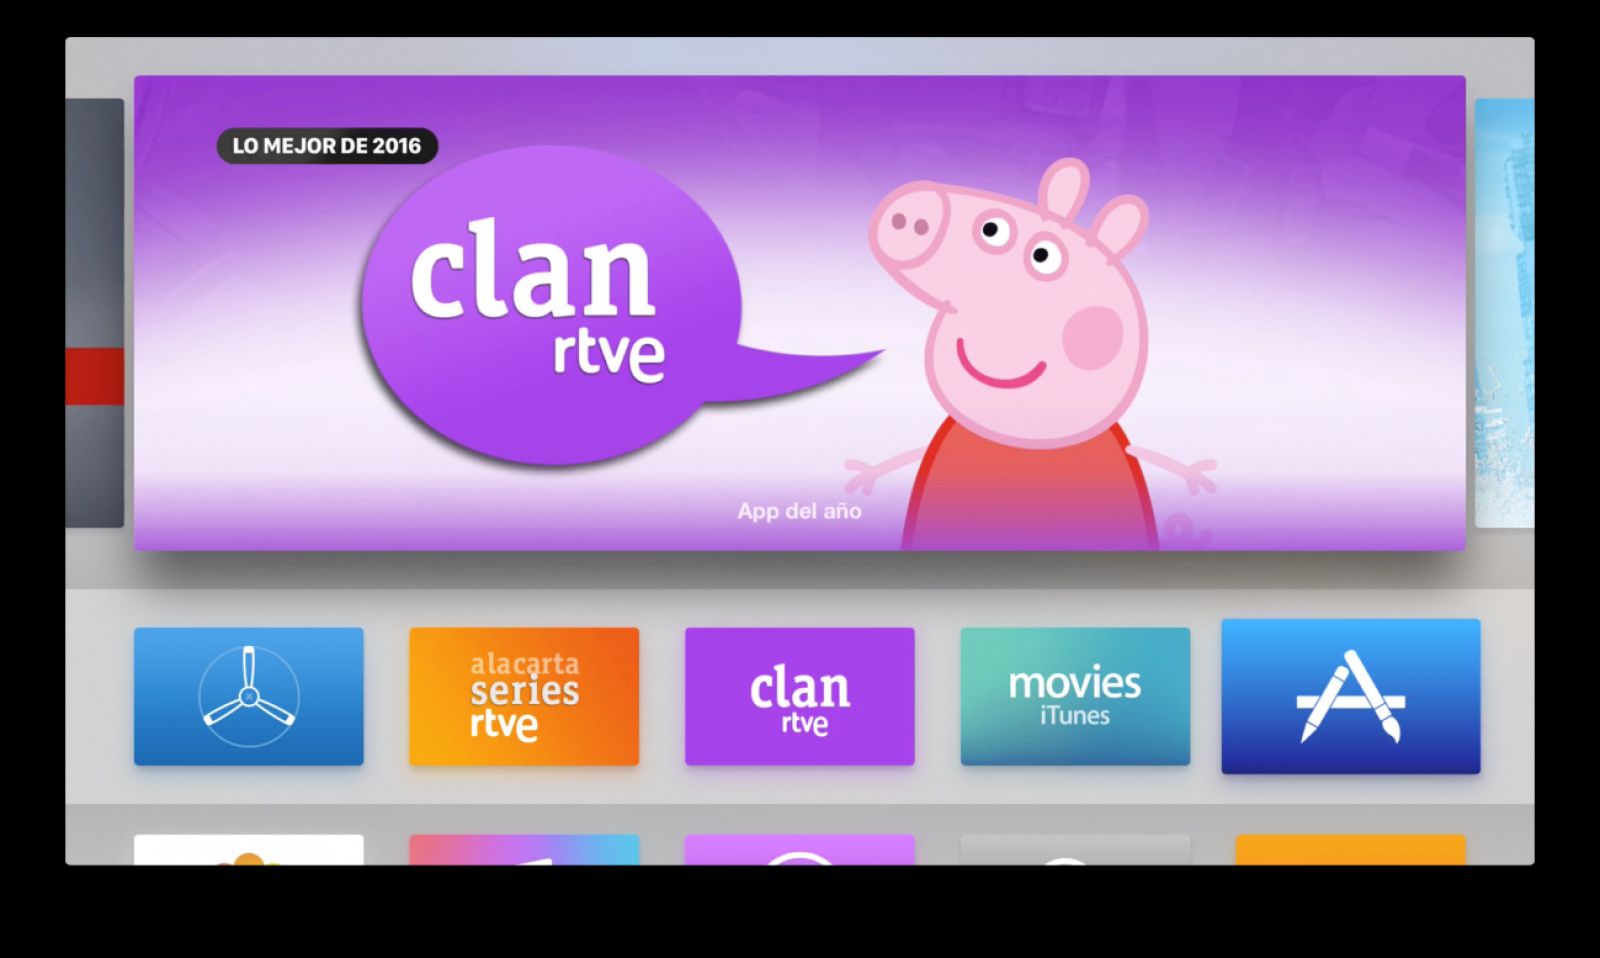 La app de Clan se encuentra dentro de las cinco más instaladas de Apple TV